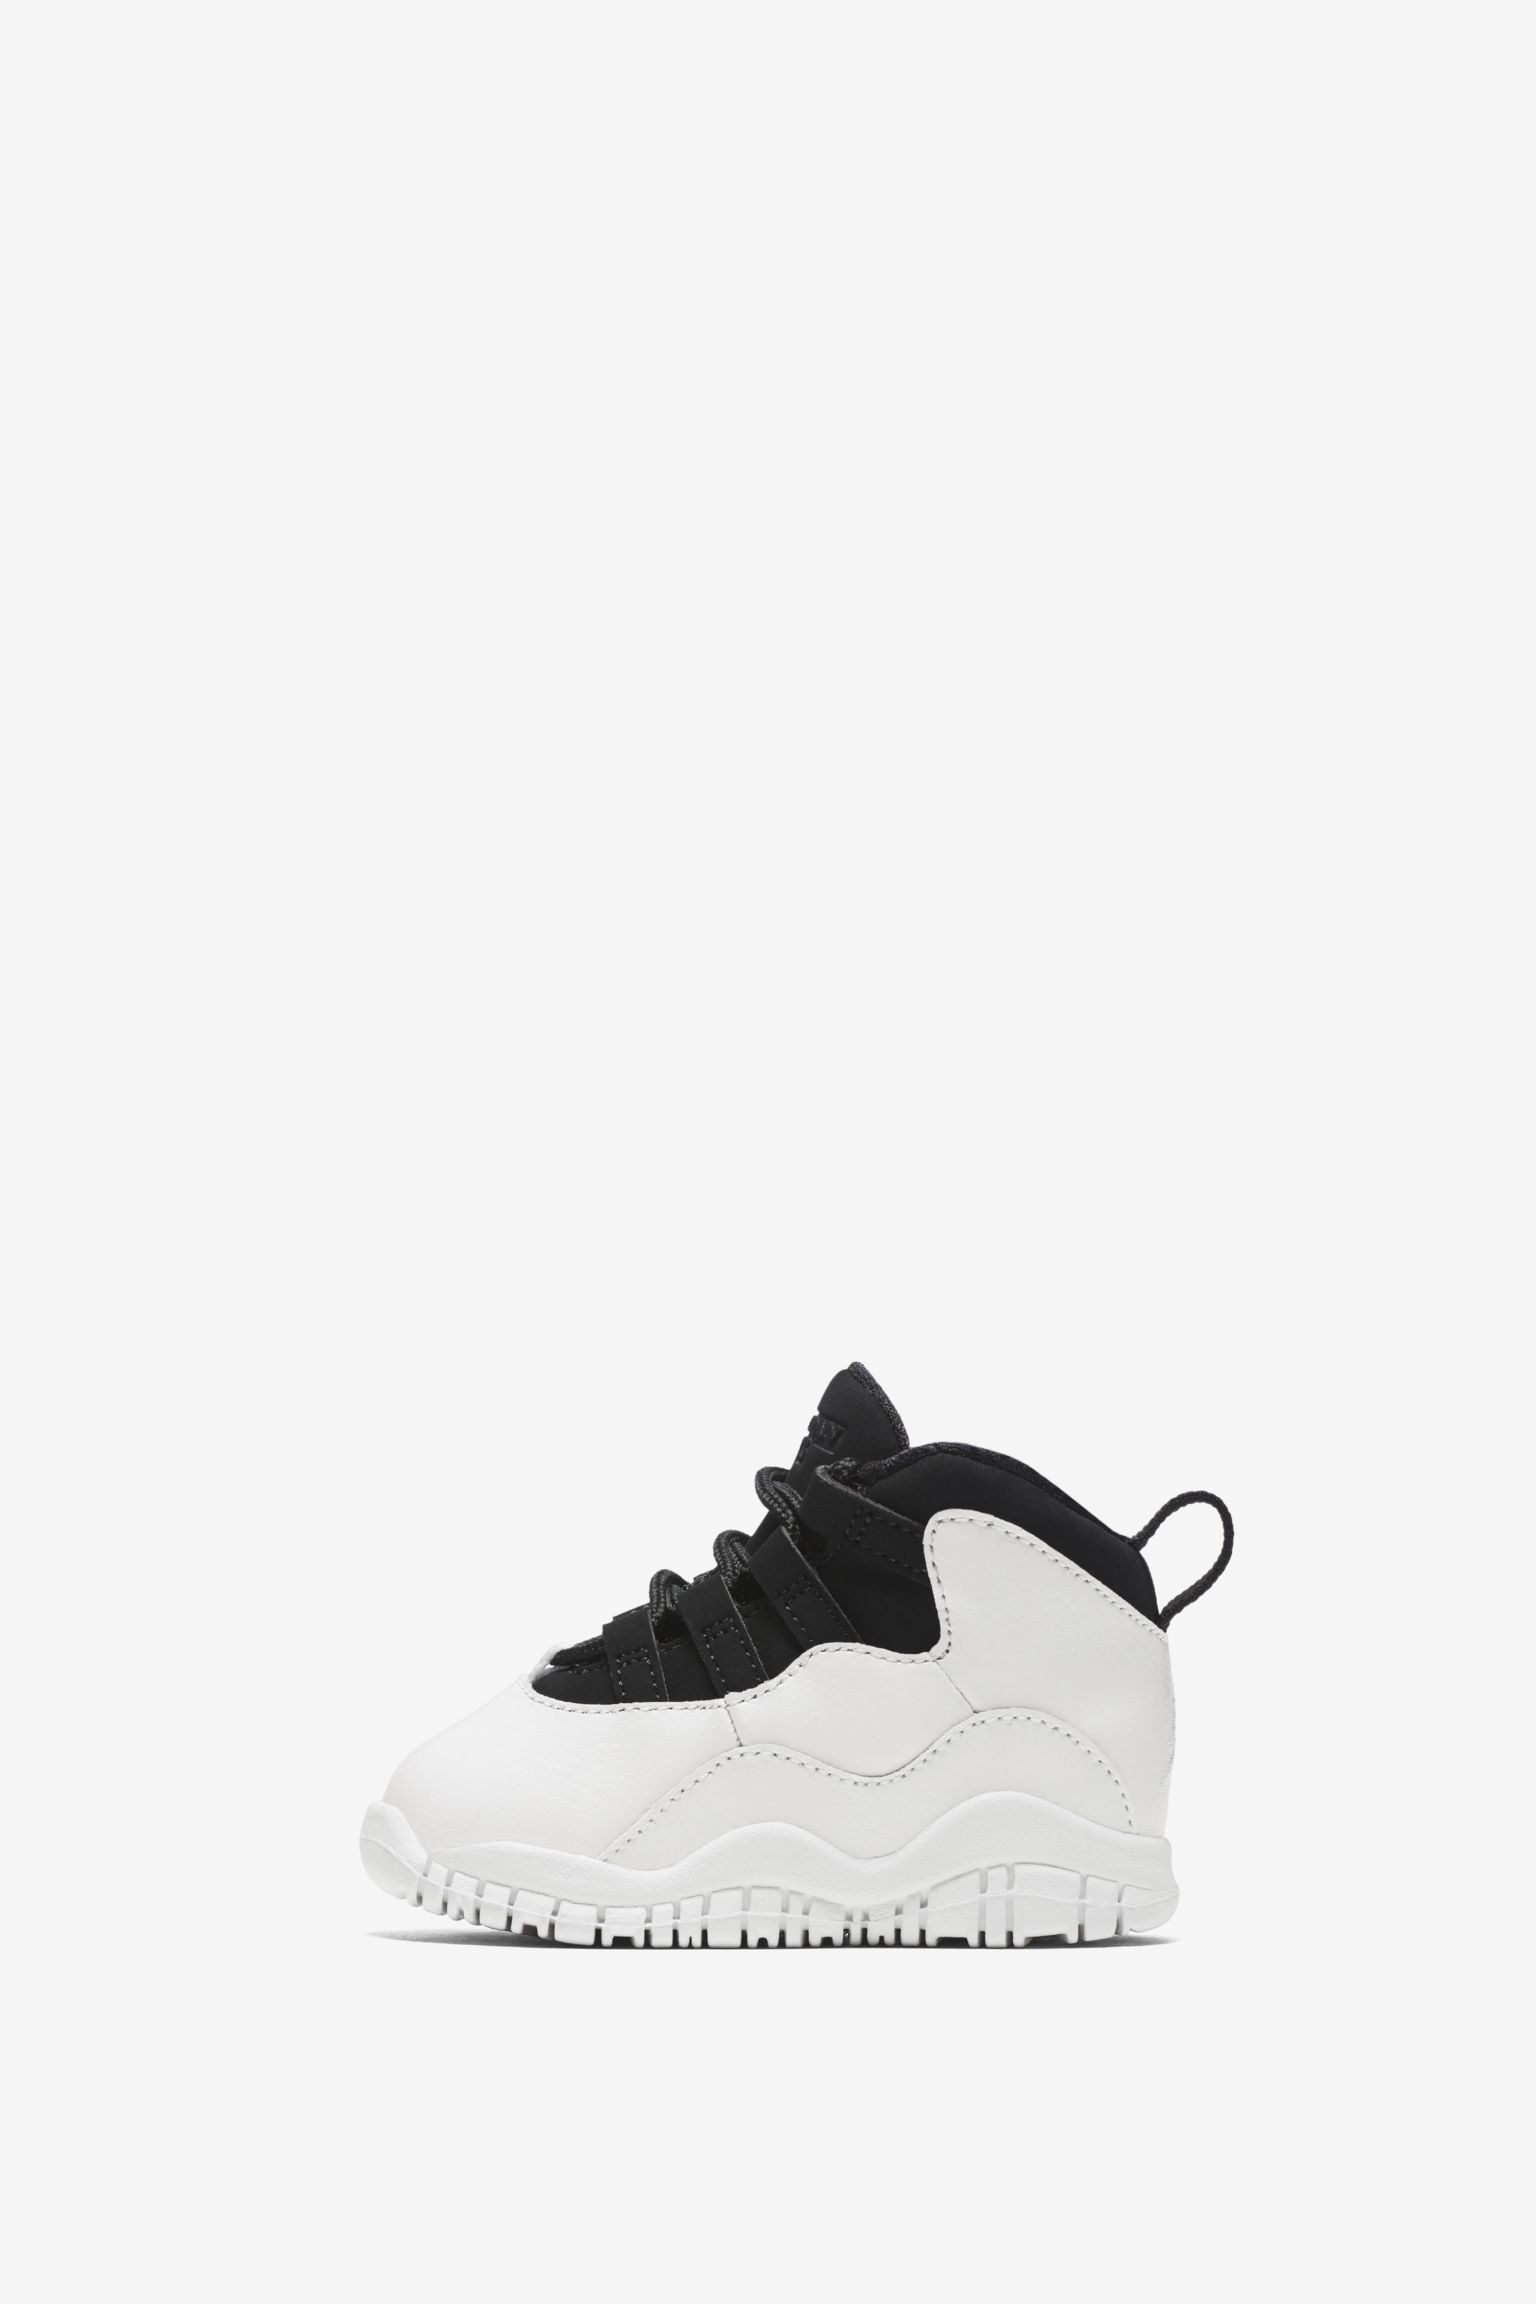 Indvandring Virus krigsskib Air Jordan 10 Retro 'Summit White & Black' Release Date. Nike SNKRS